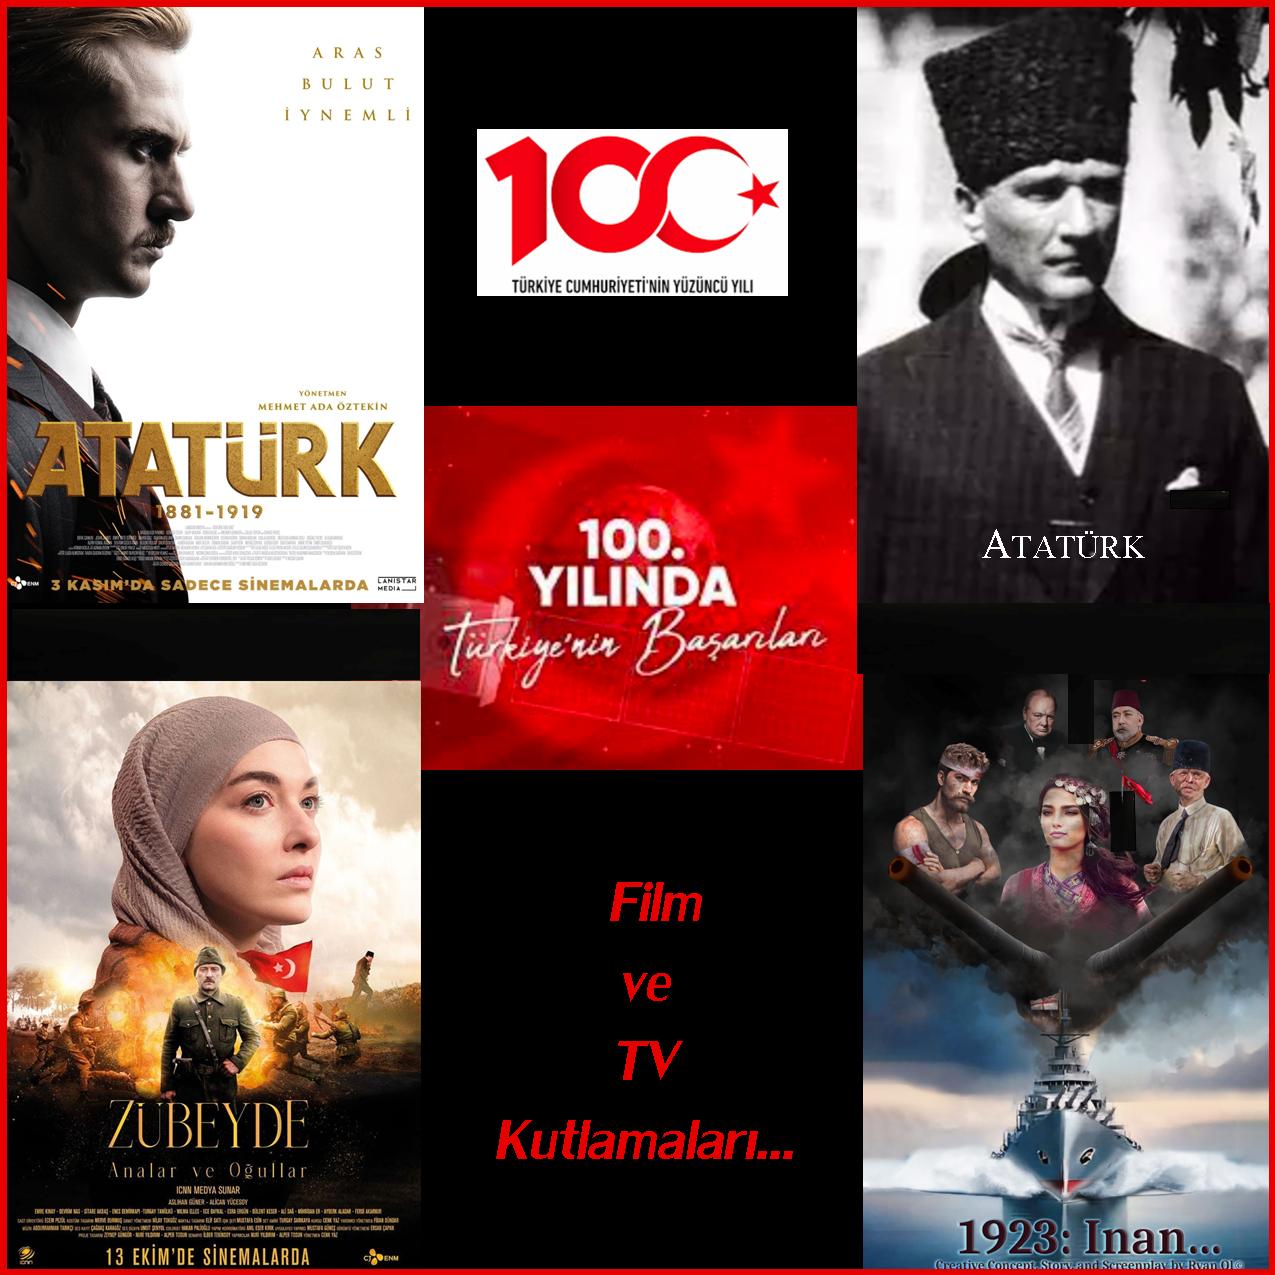 TV & Film Investment in Turkiye